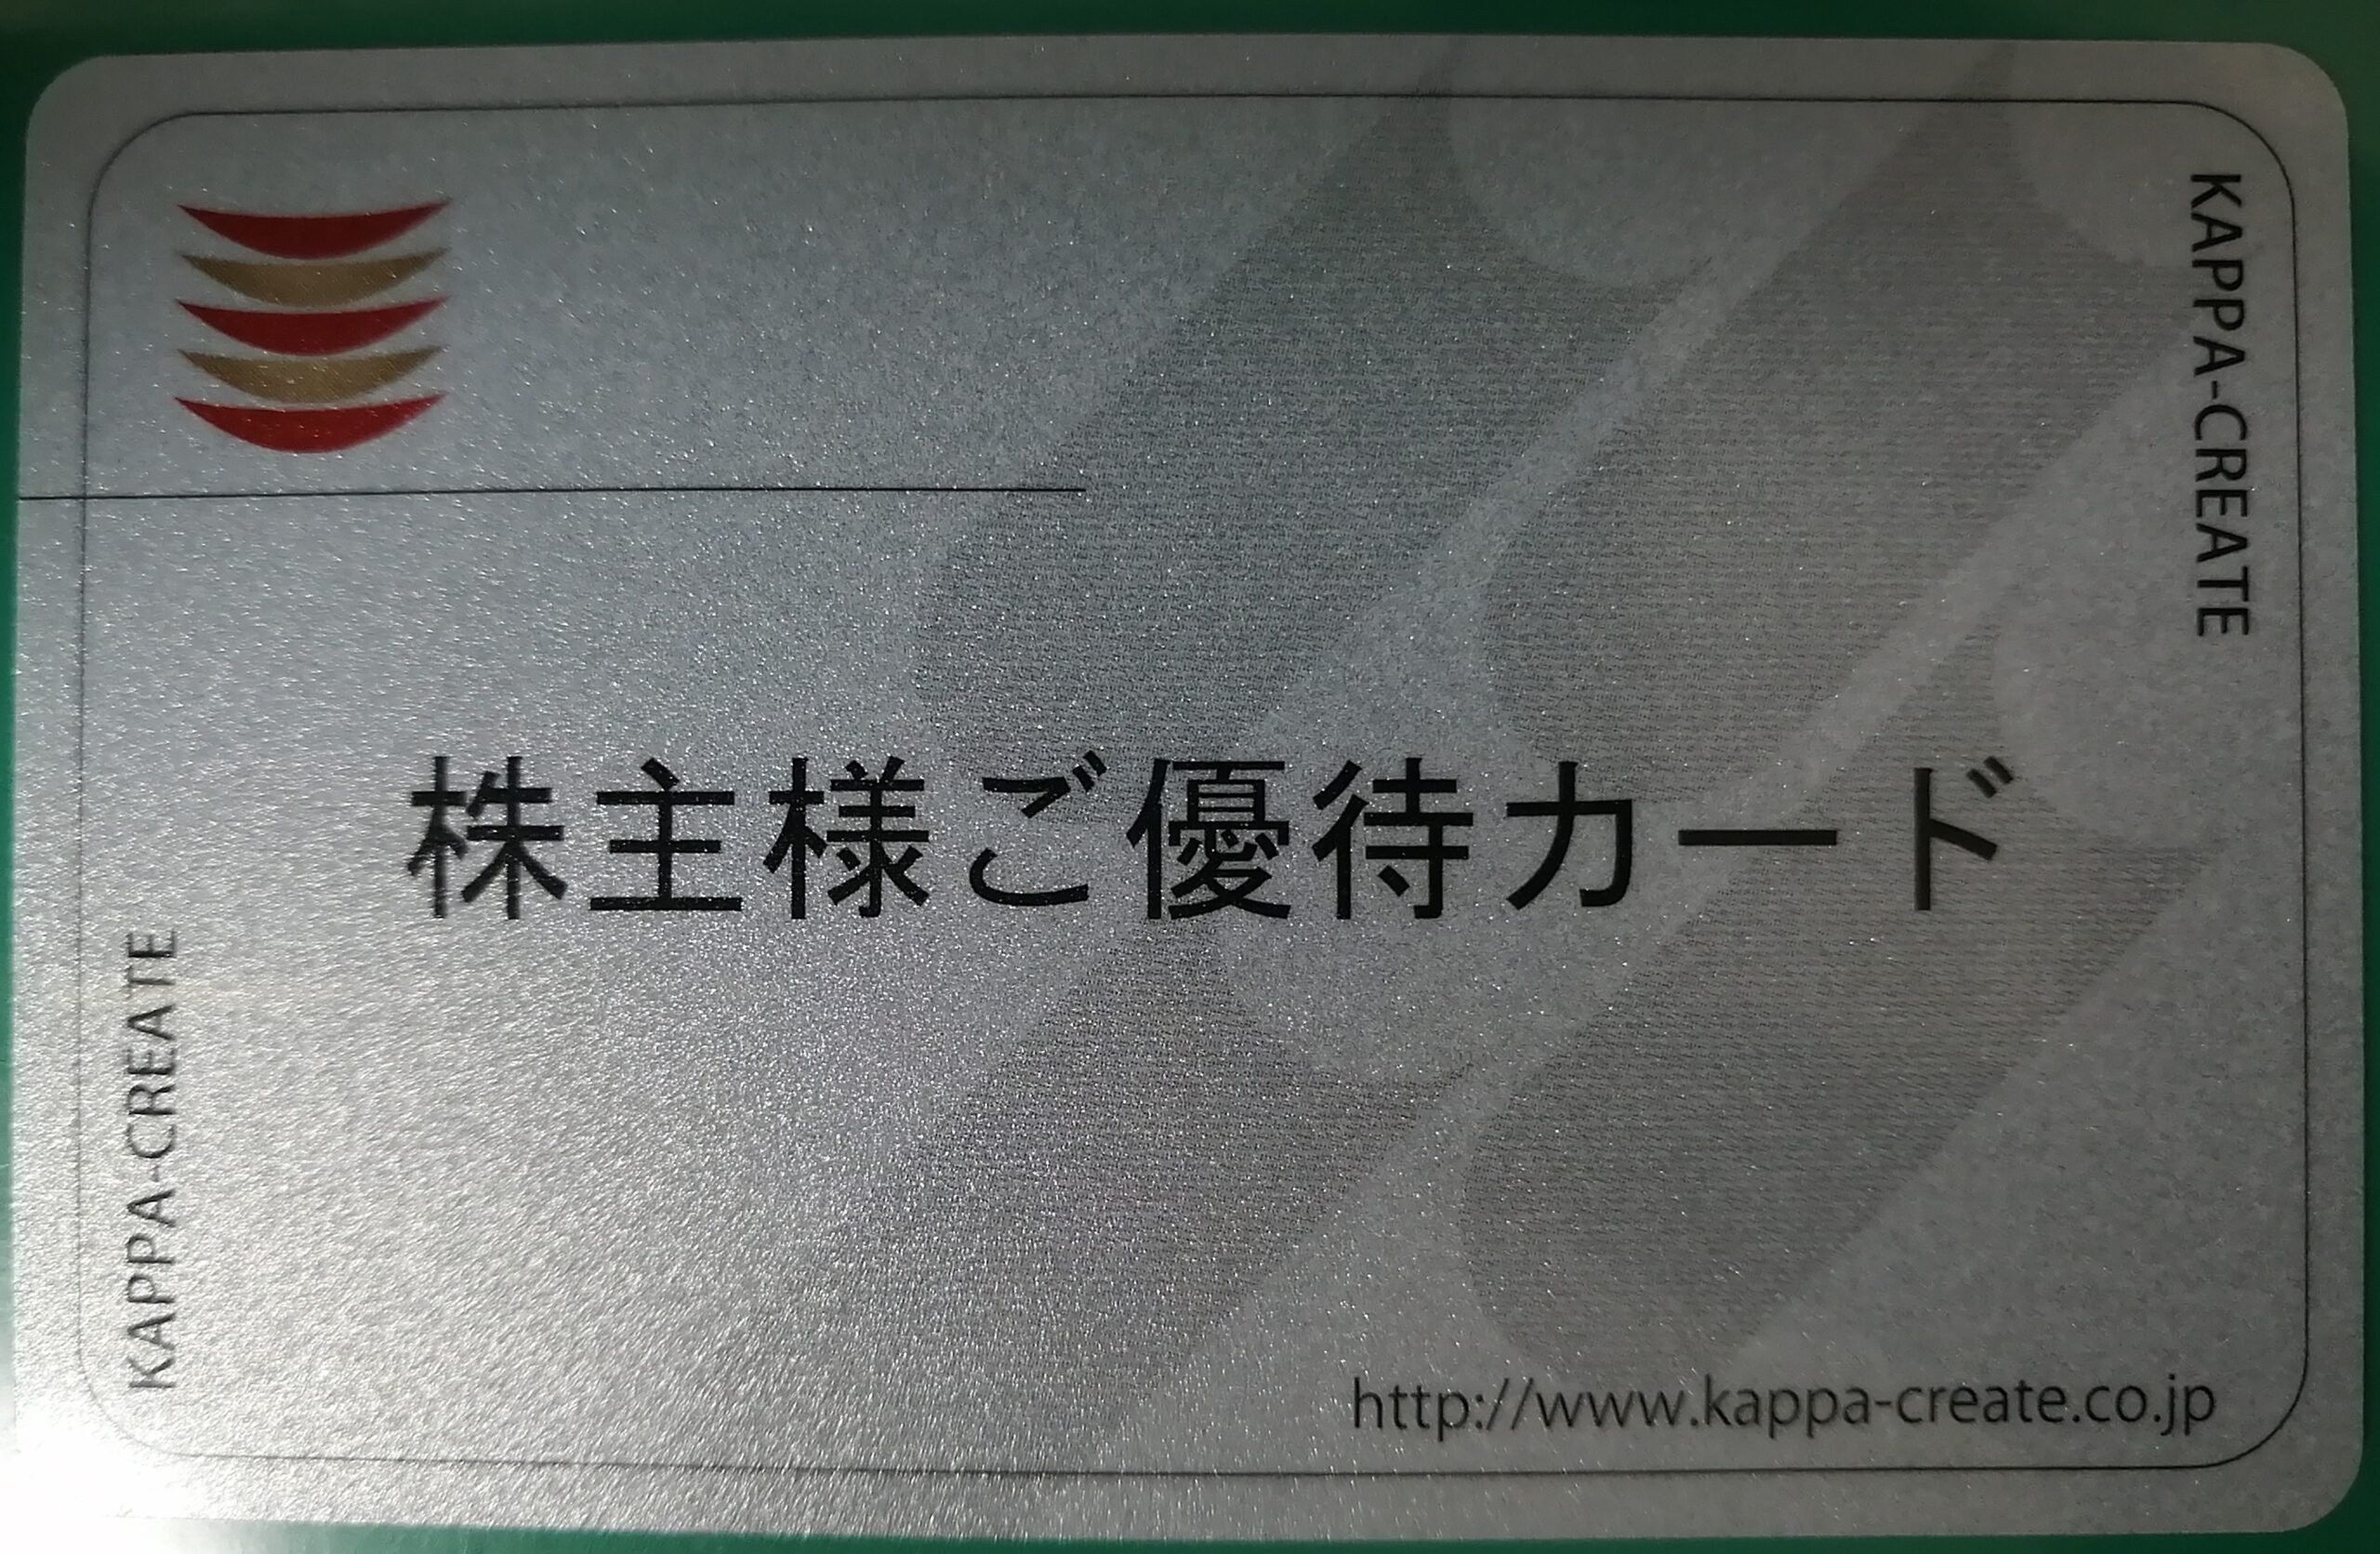 カッパクリエイト　6,000円　株主優待カード　【返却不要】